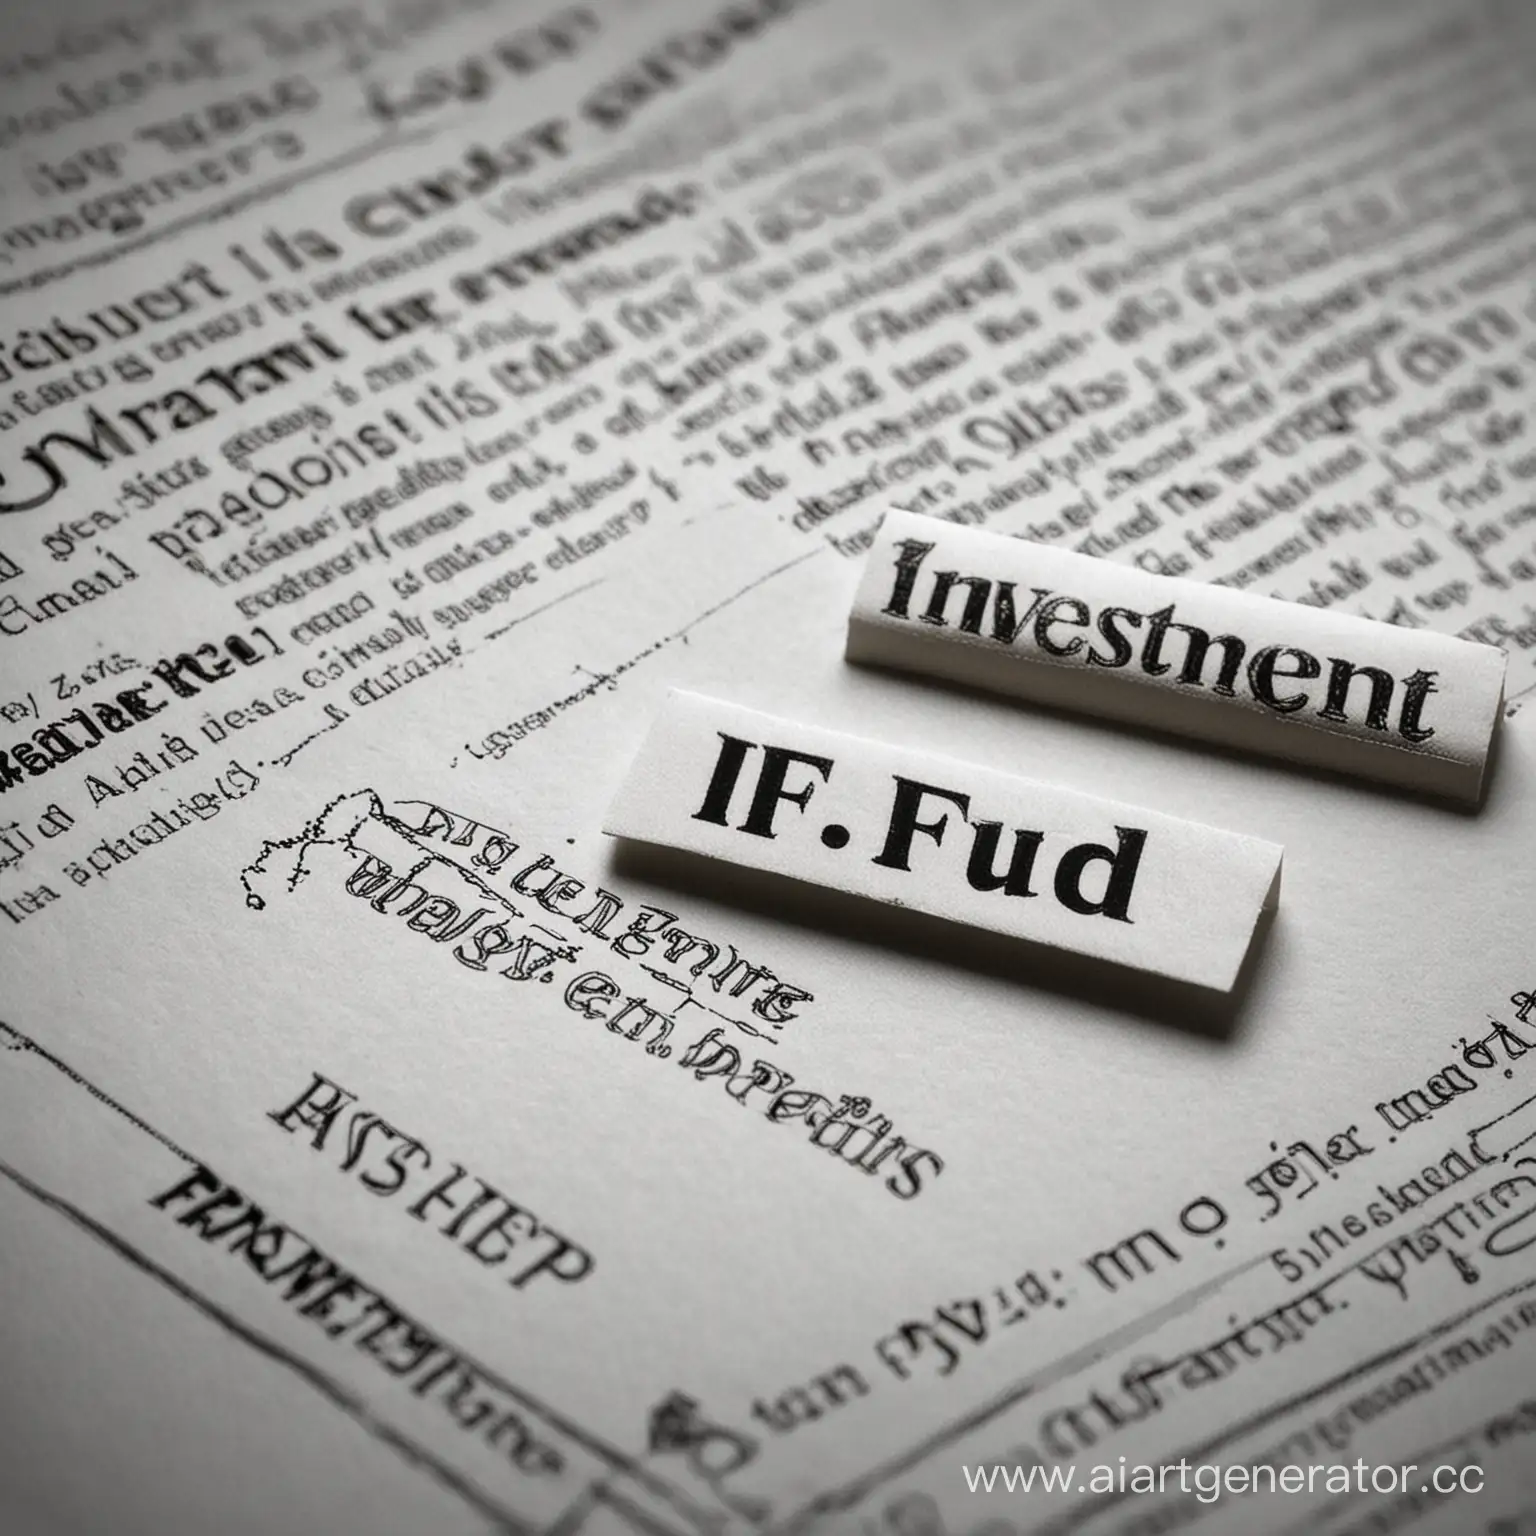 Паевой инвестиционный фонд (ПИФ) — это имущественный комплекс без образования юридического лица, основанный на доверительном управлении имуществом фонда специализированной управляющей компанией.